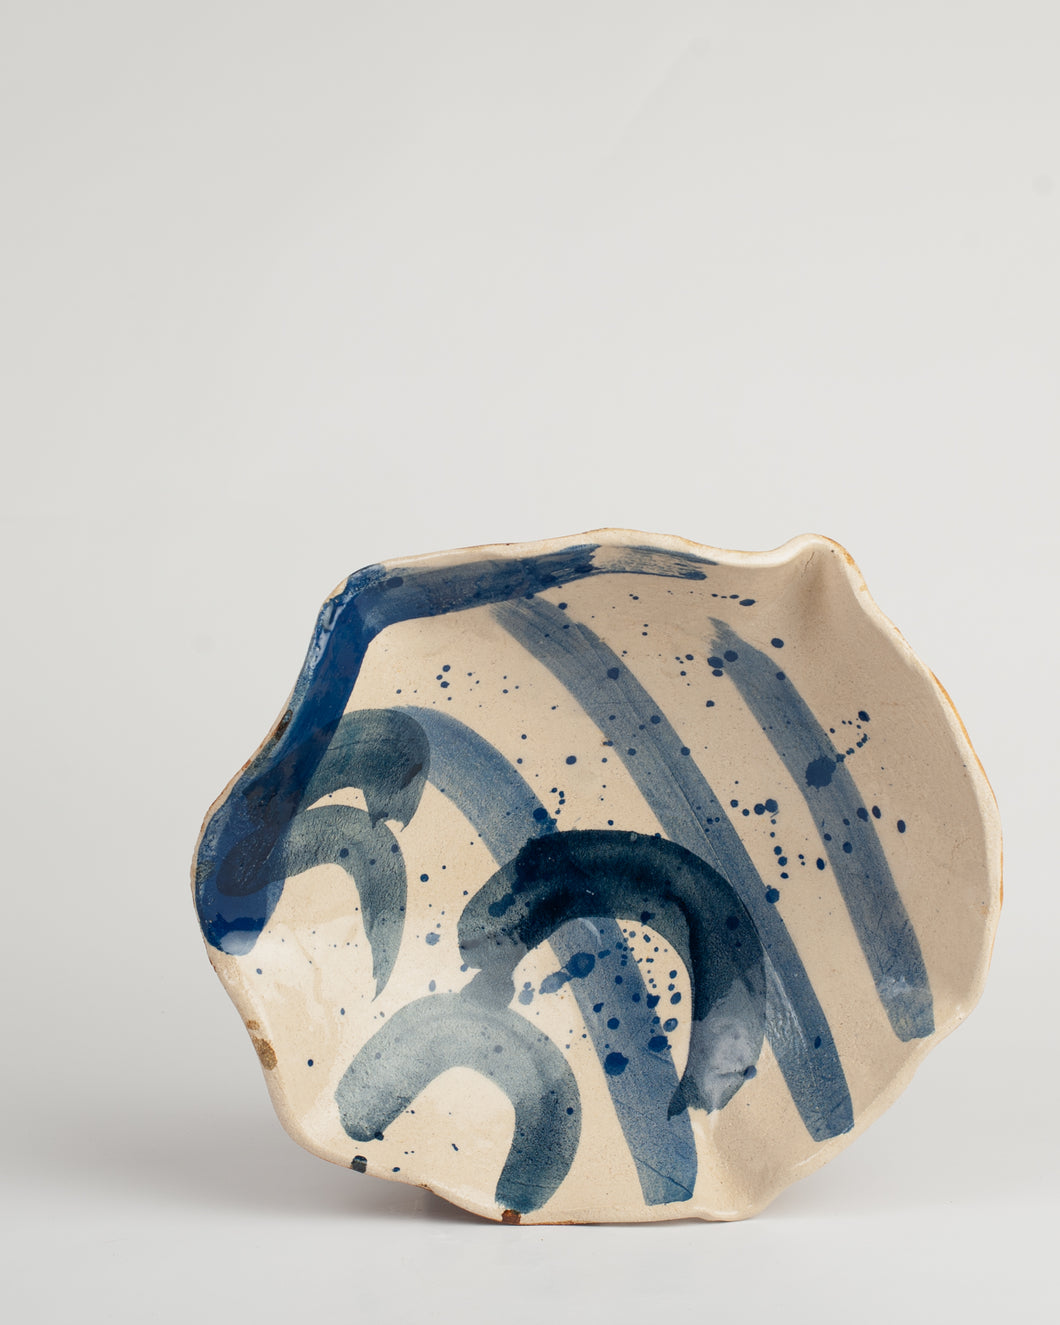 Glazed ceramic piece